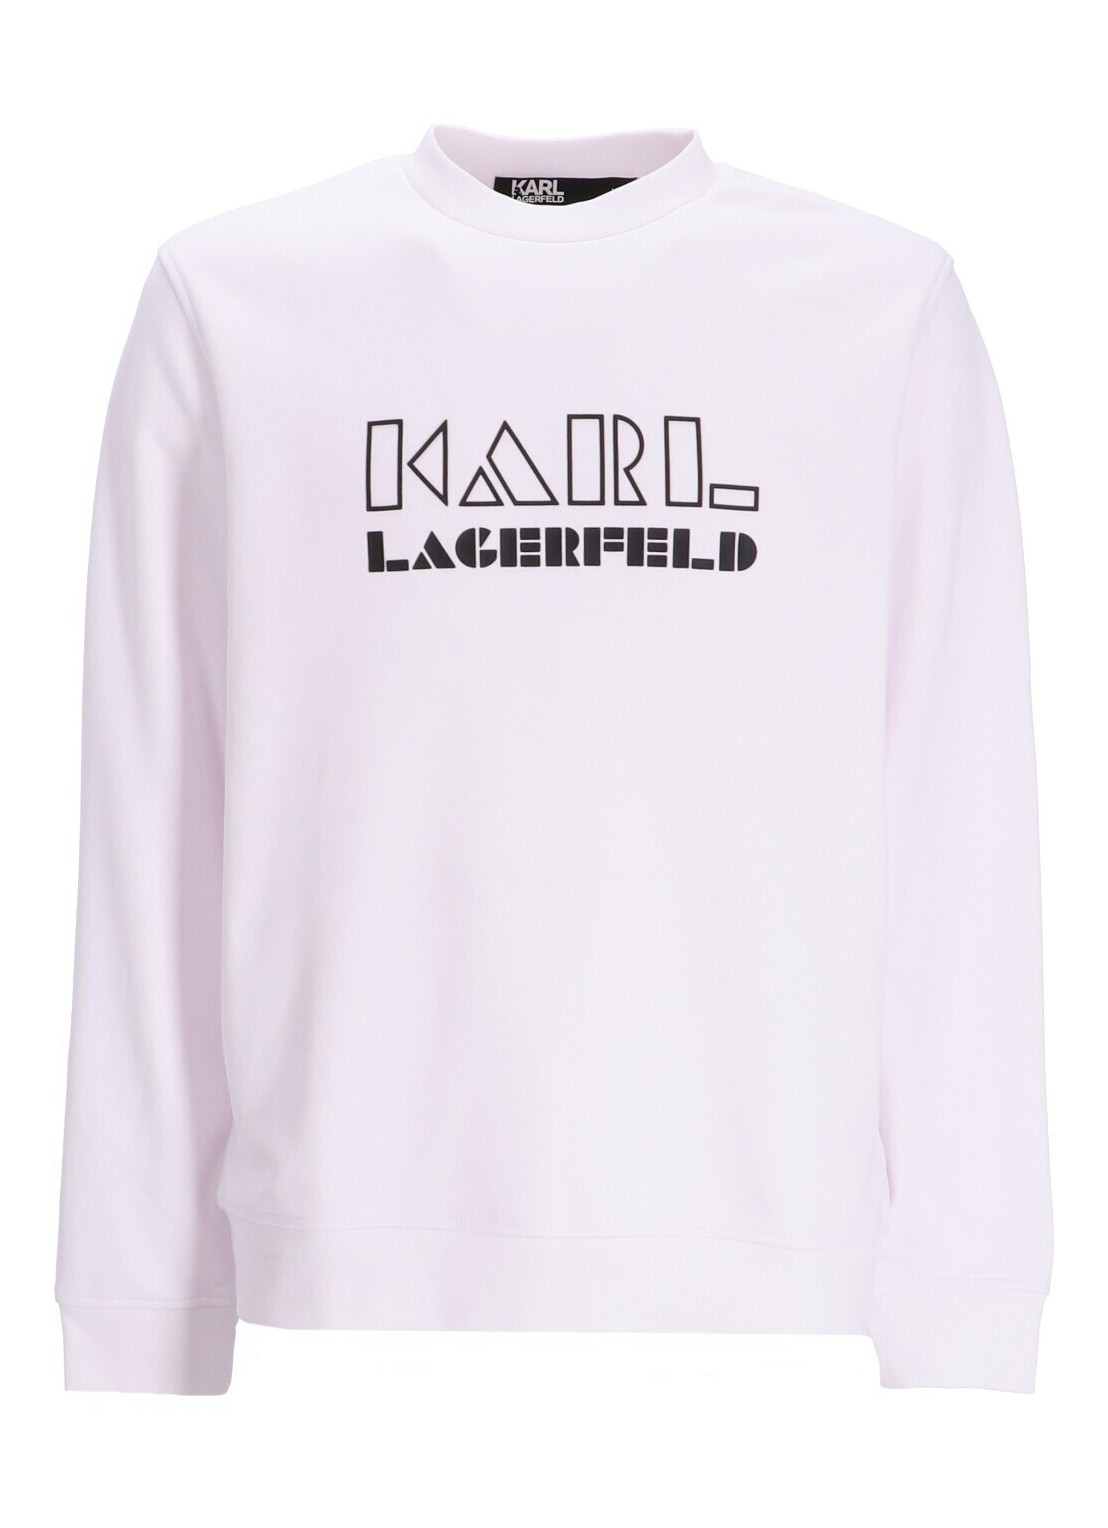 Sudadera karl lagerfeld sweater man sweat crewneck 705060533910 19 talla XL
 